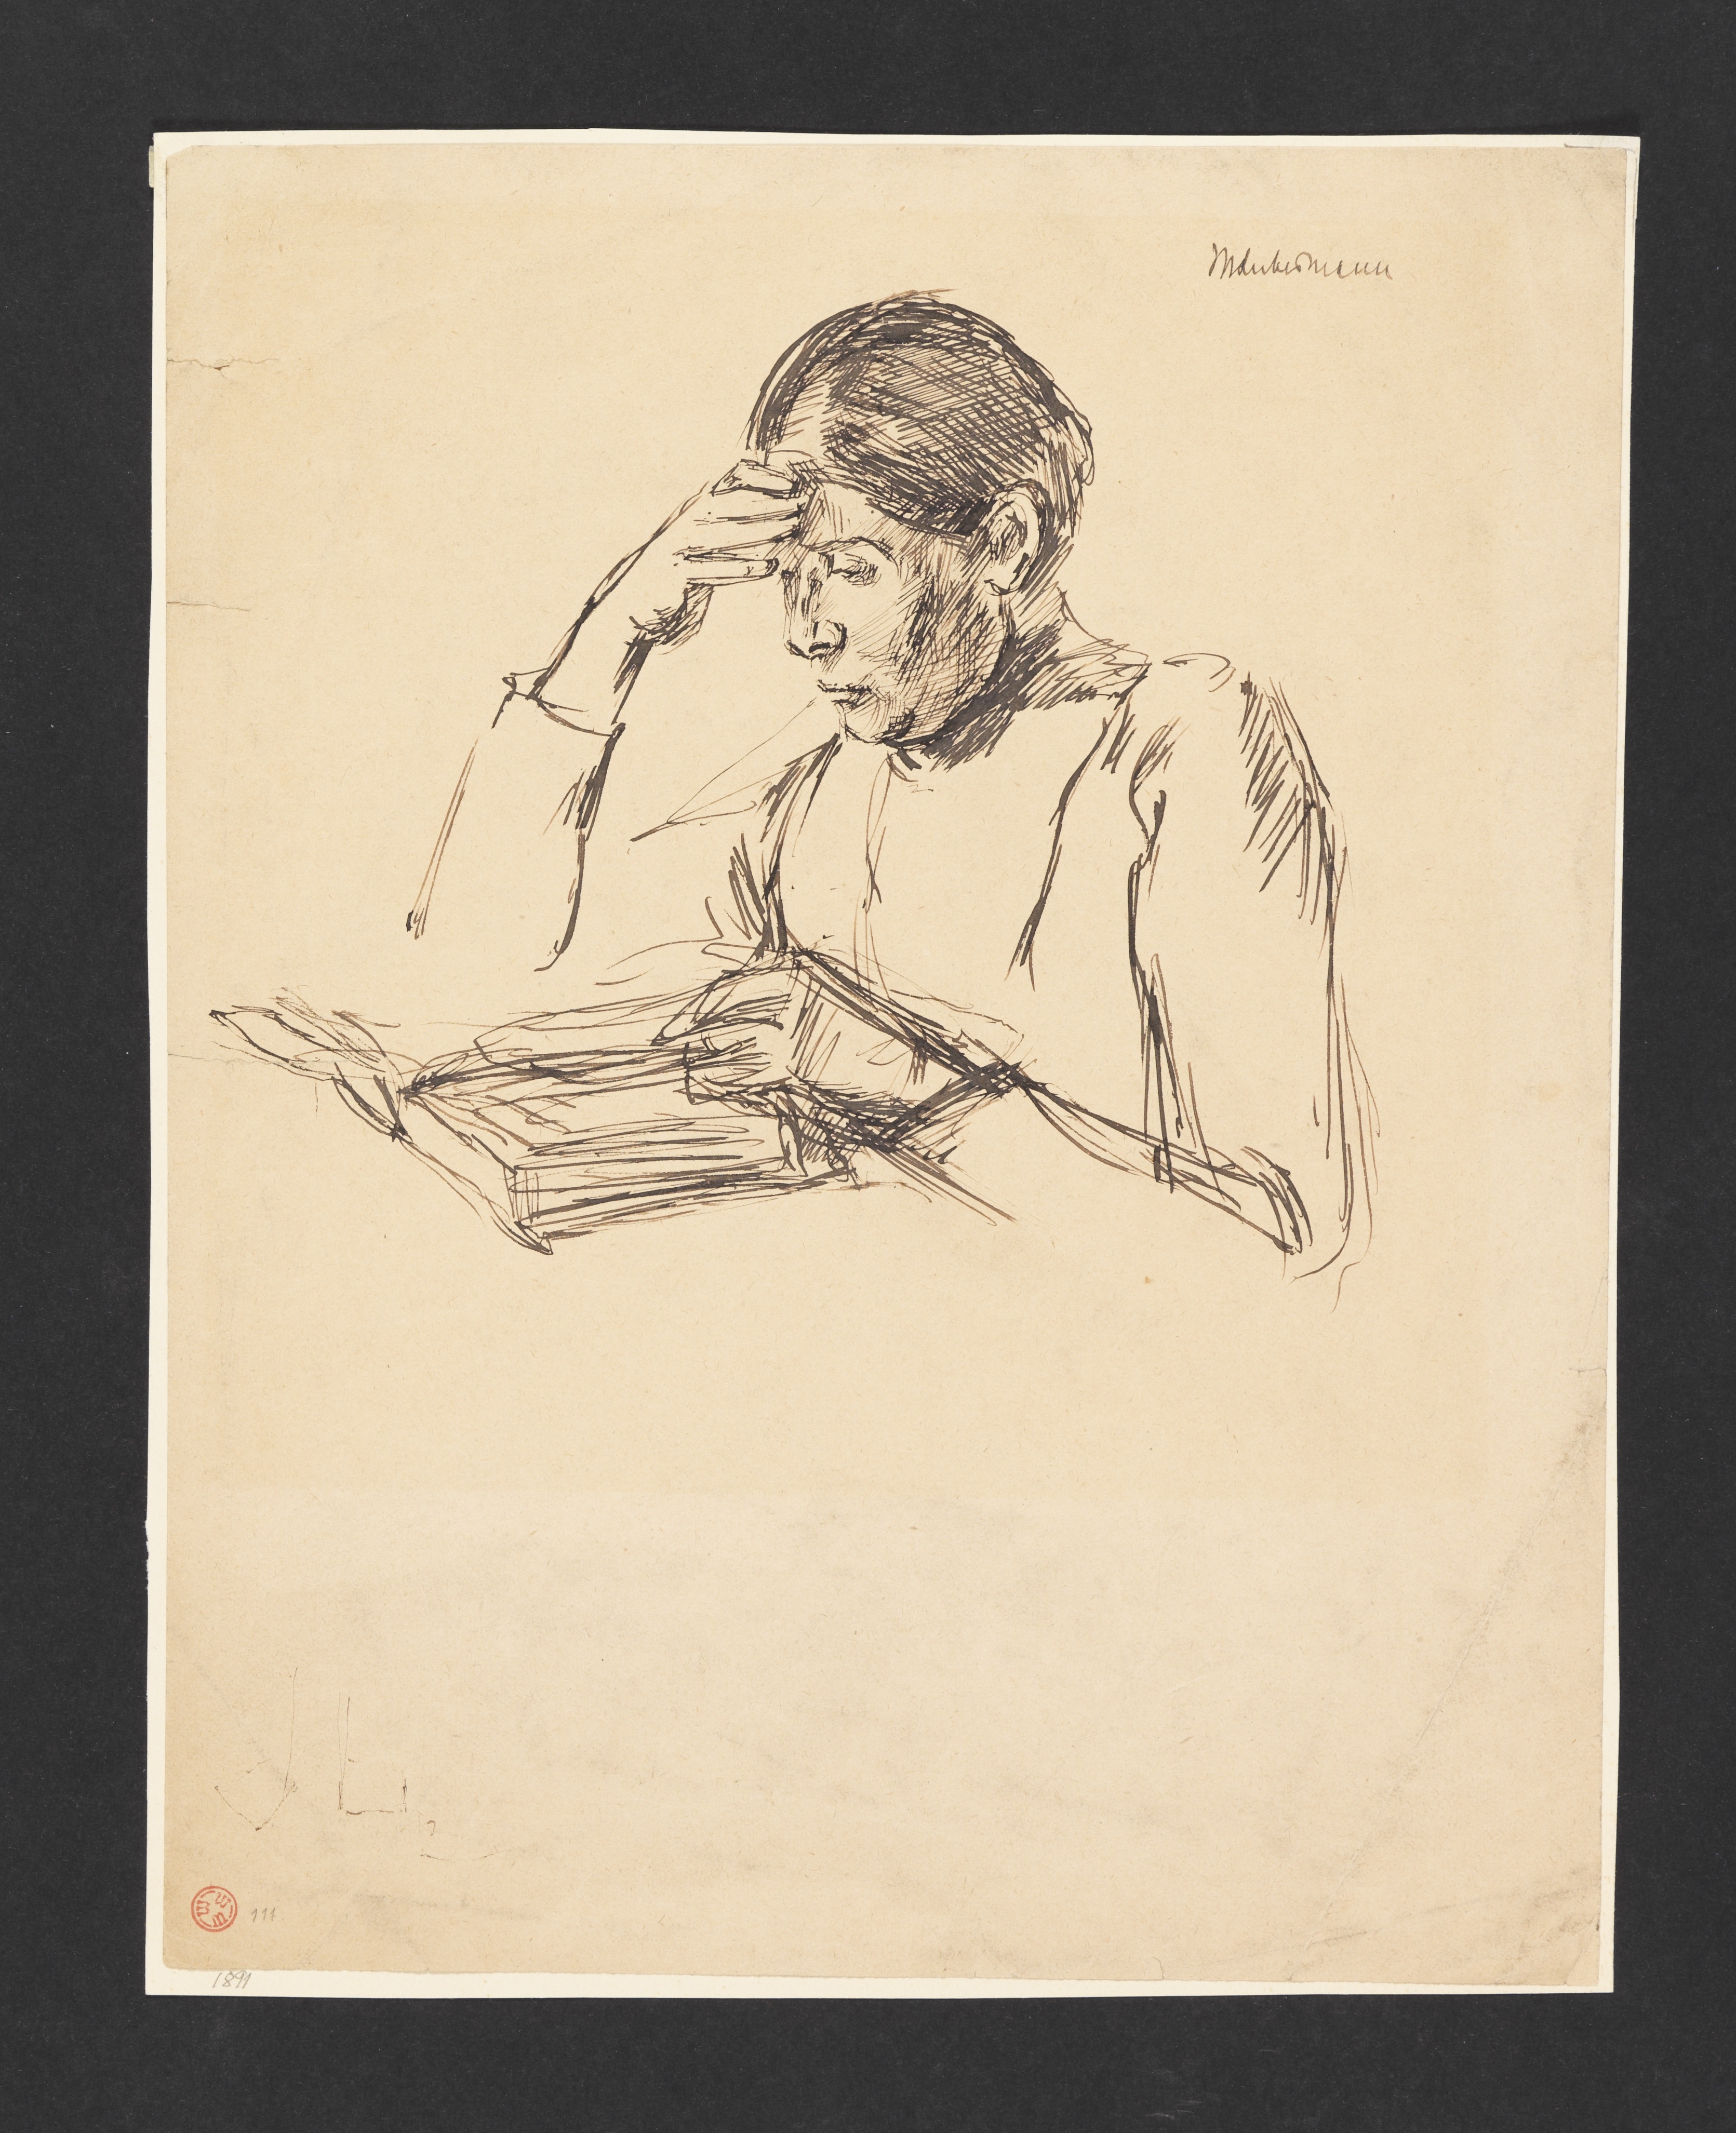 Lesende (Martha Liebermann) by Max Liebermann, 1888